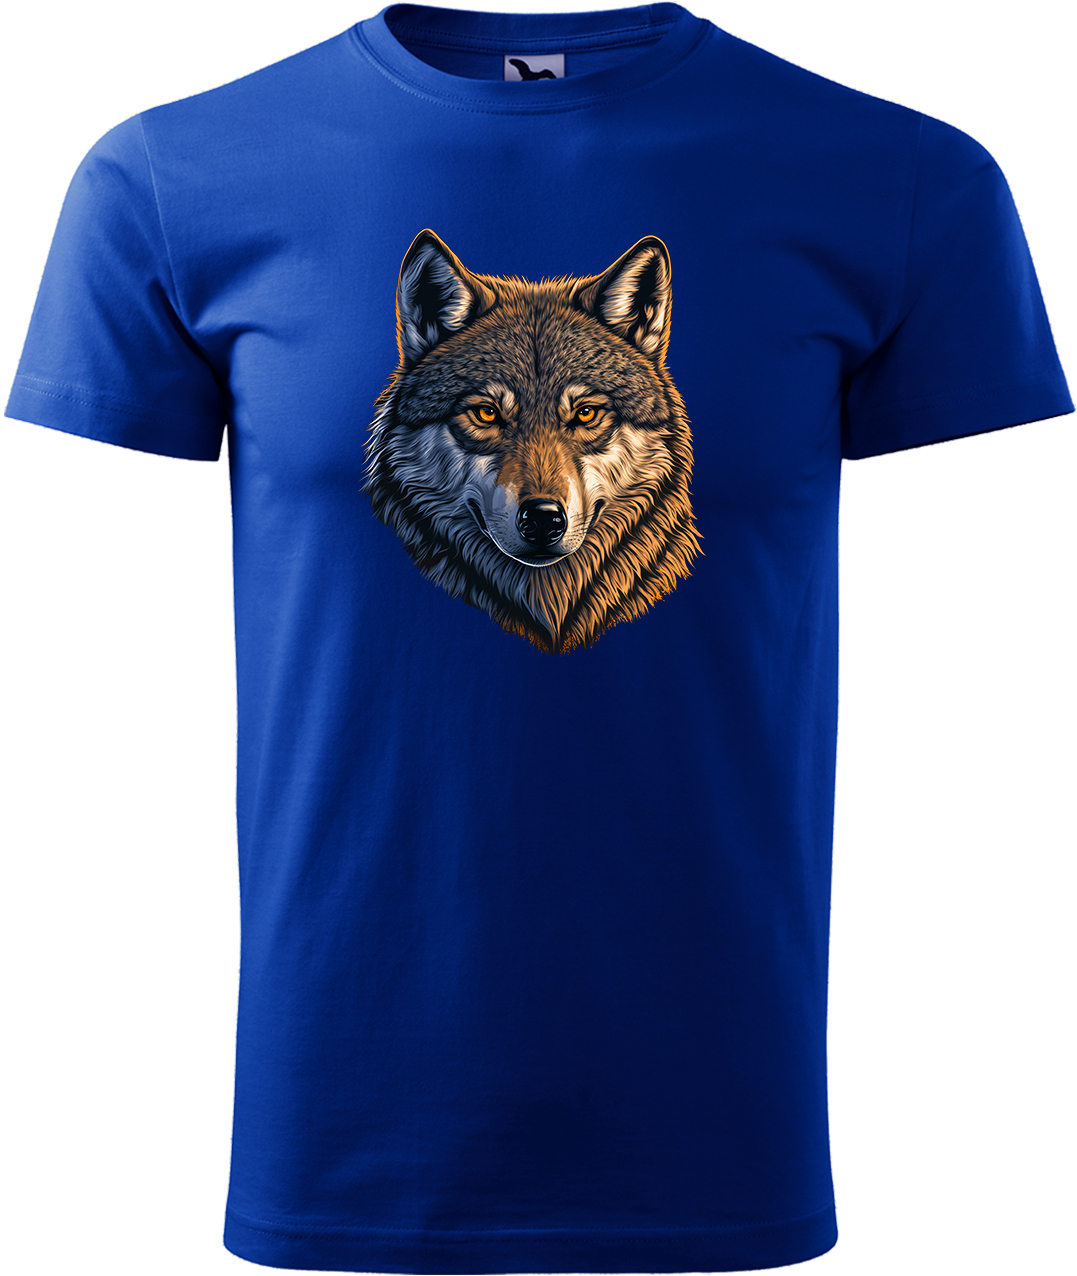 Pánské tričko s vlkem - Hlava vlka Velikost: L, Barva: Královská modrá (05), Střih: pánský